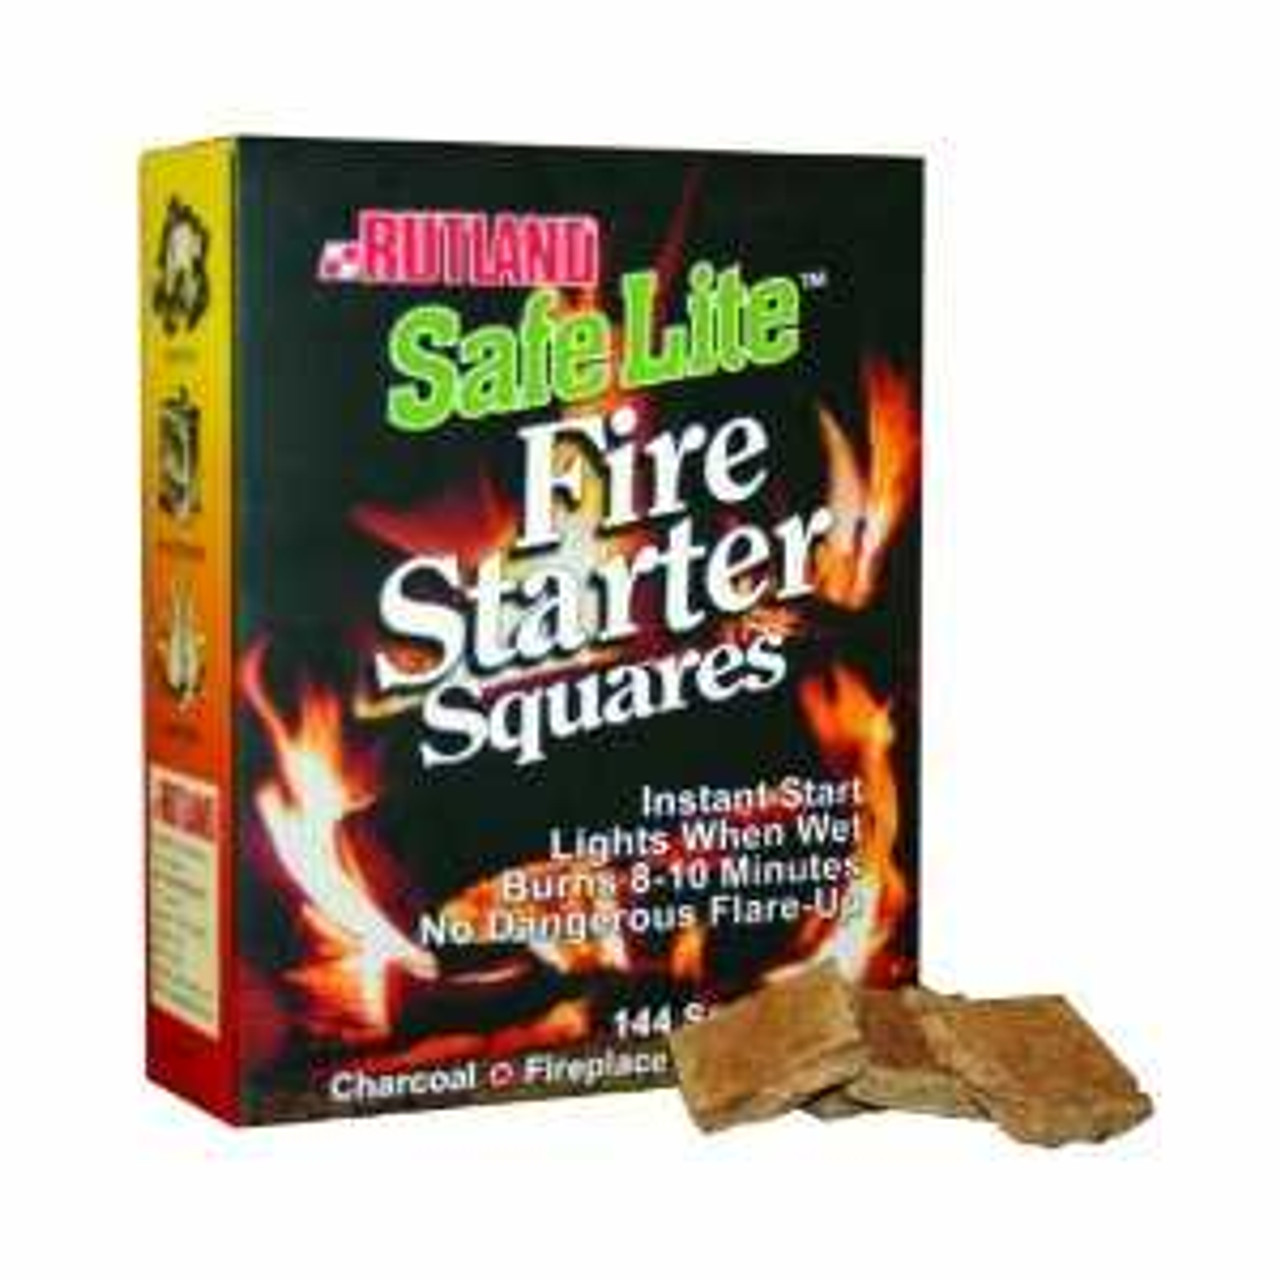 Foran Staple Original Safe Lite Fire Starters (144 Squares)